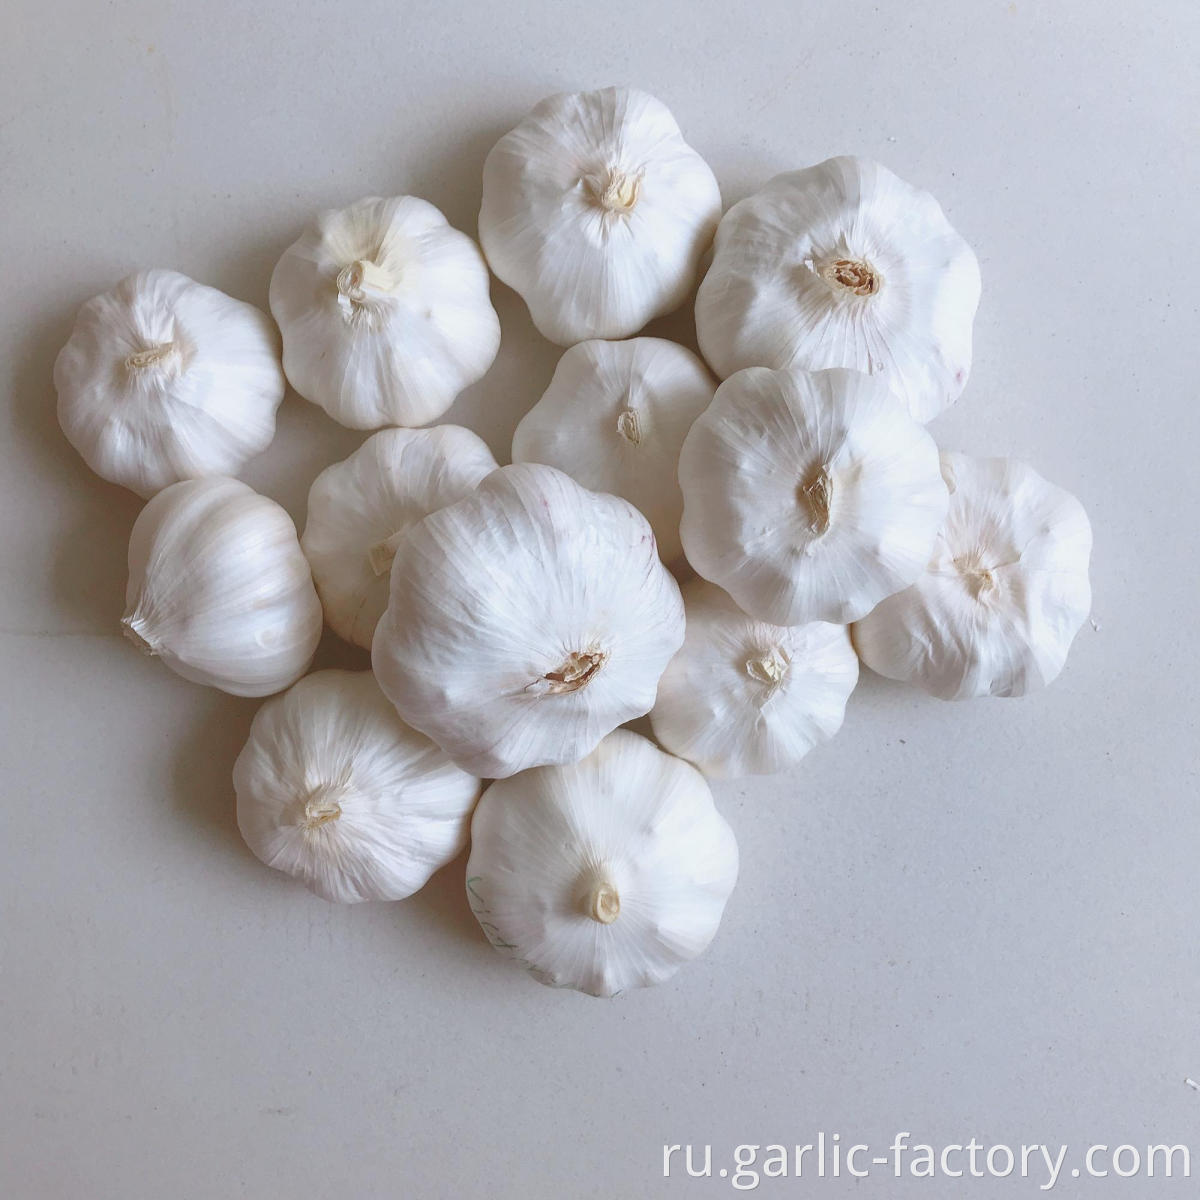 New Crop Fresh Garlic Market Price 1KG